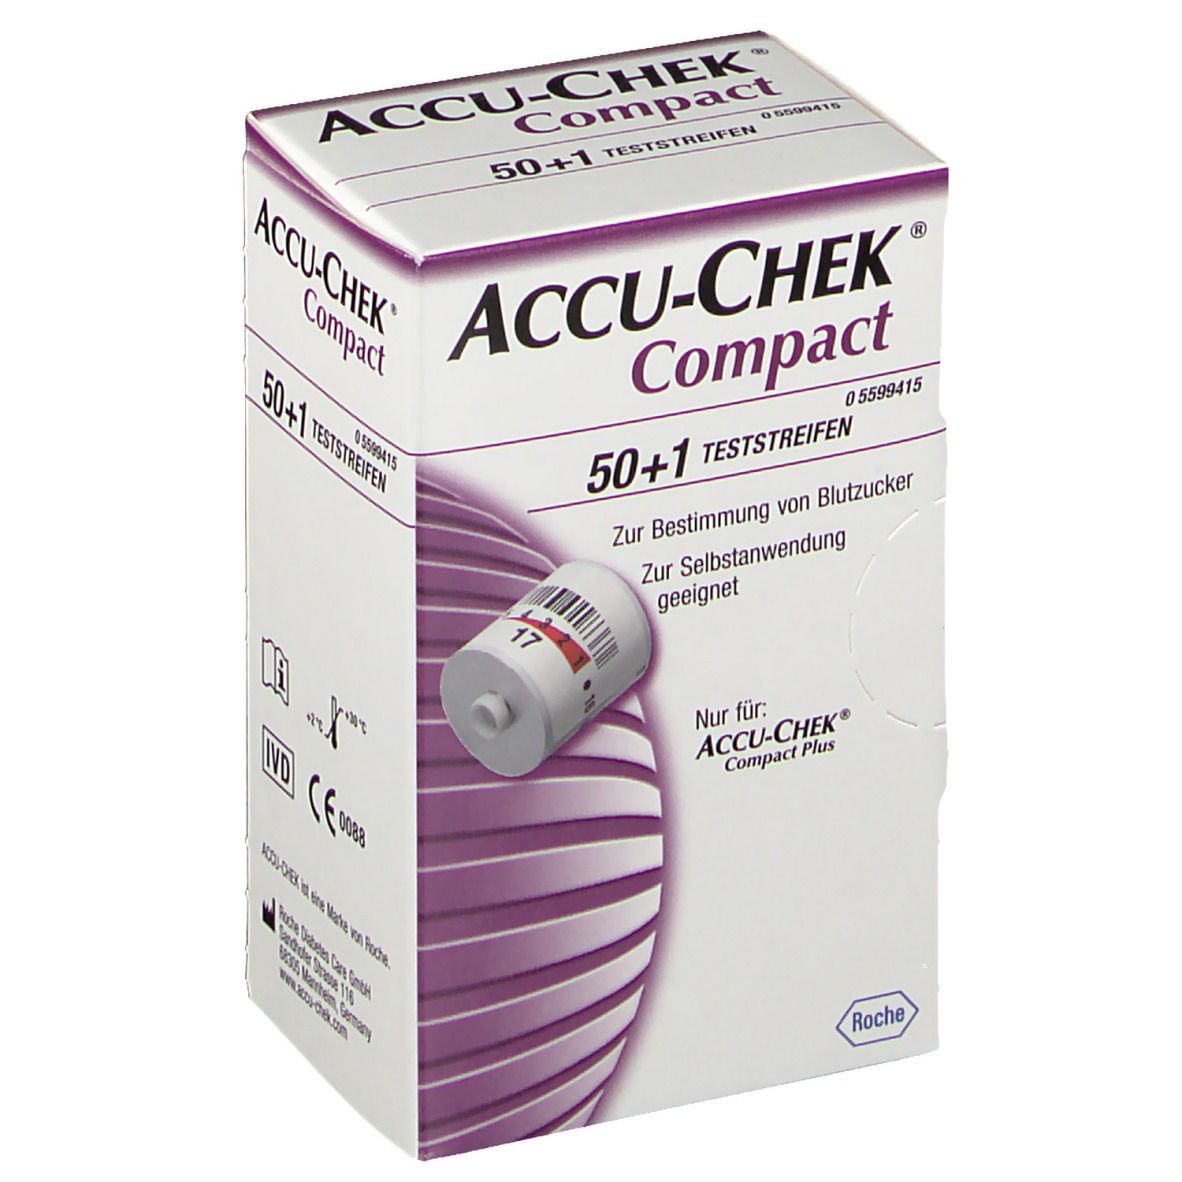 ACCU-CHEK® Compact Teststreifen